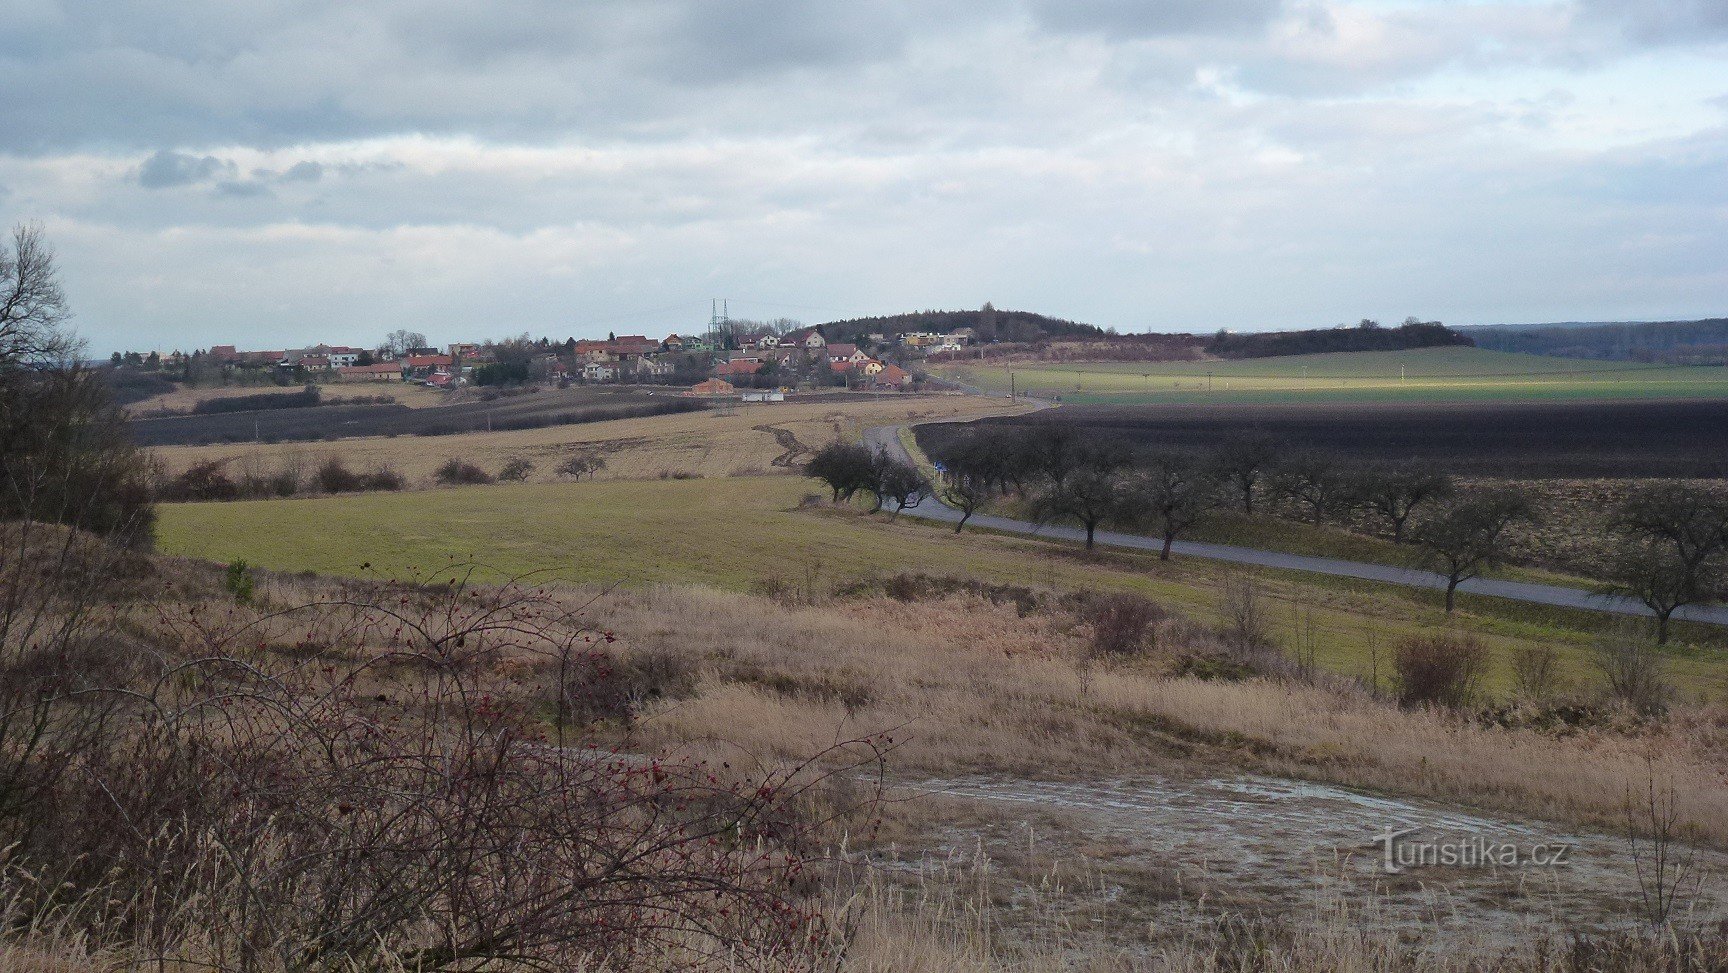 Mokošín - 从 Tupesy 附近的 jilník 可以看到 Mokošín 的山丘和村庄